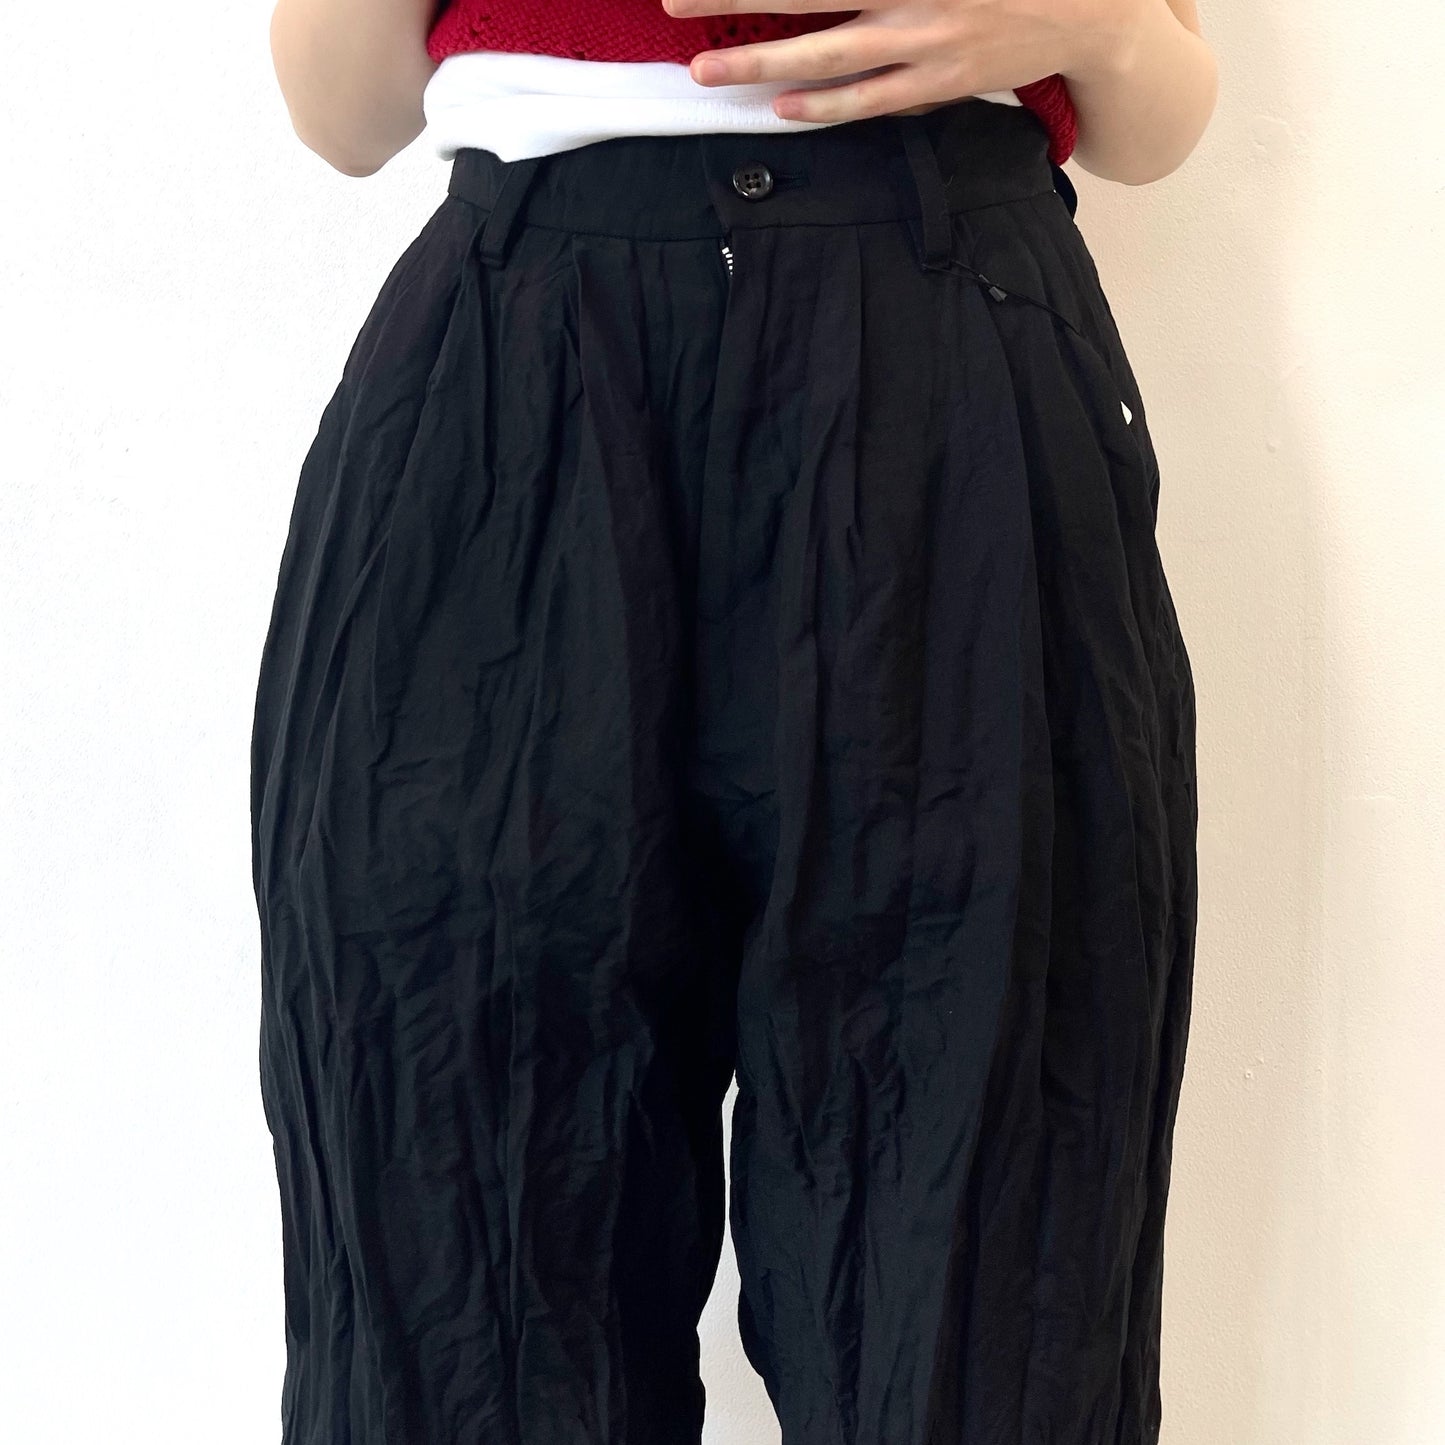 fulled pants / black / ウォッシュ加工パンツ